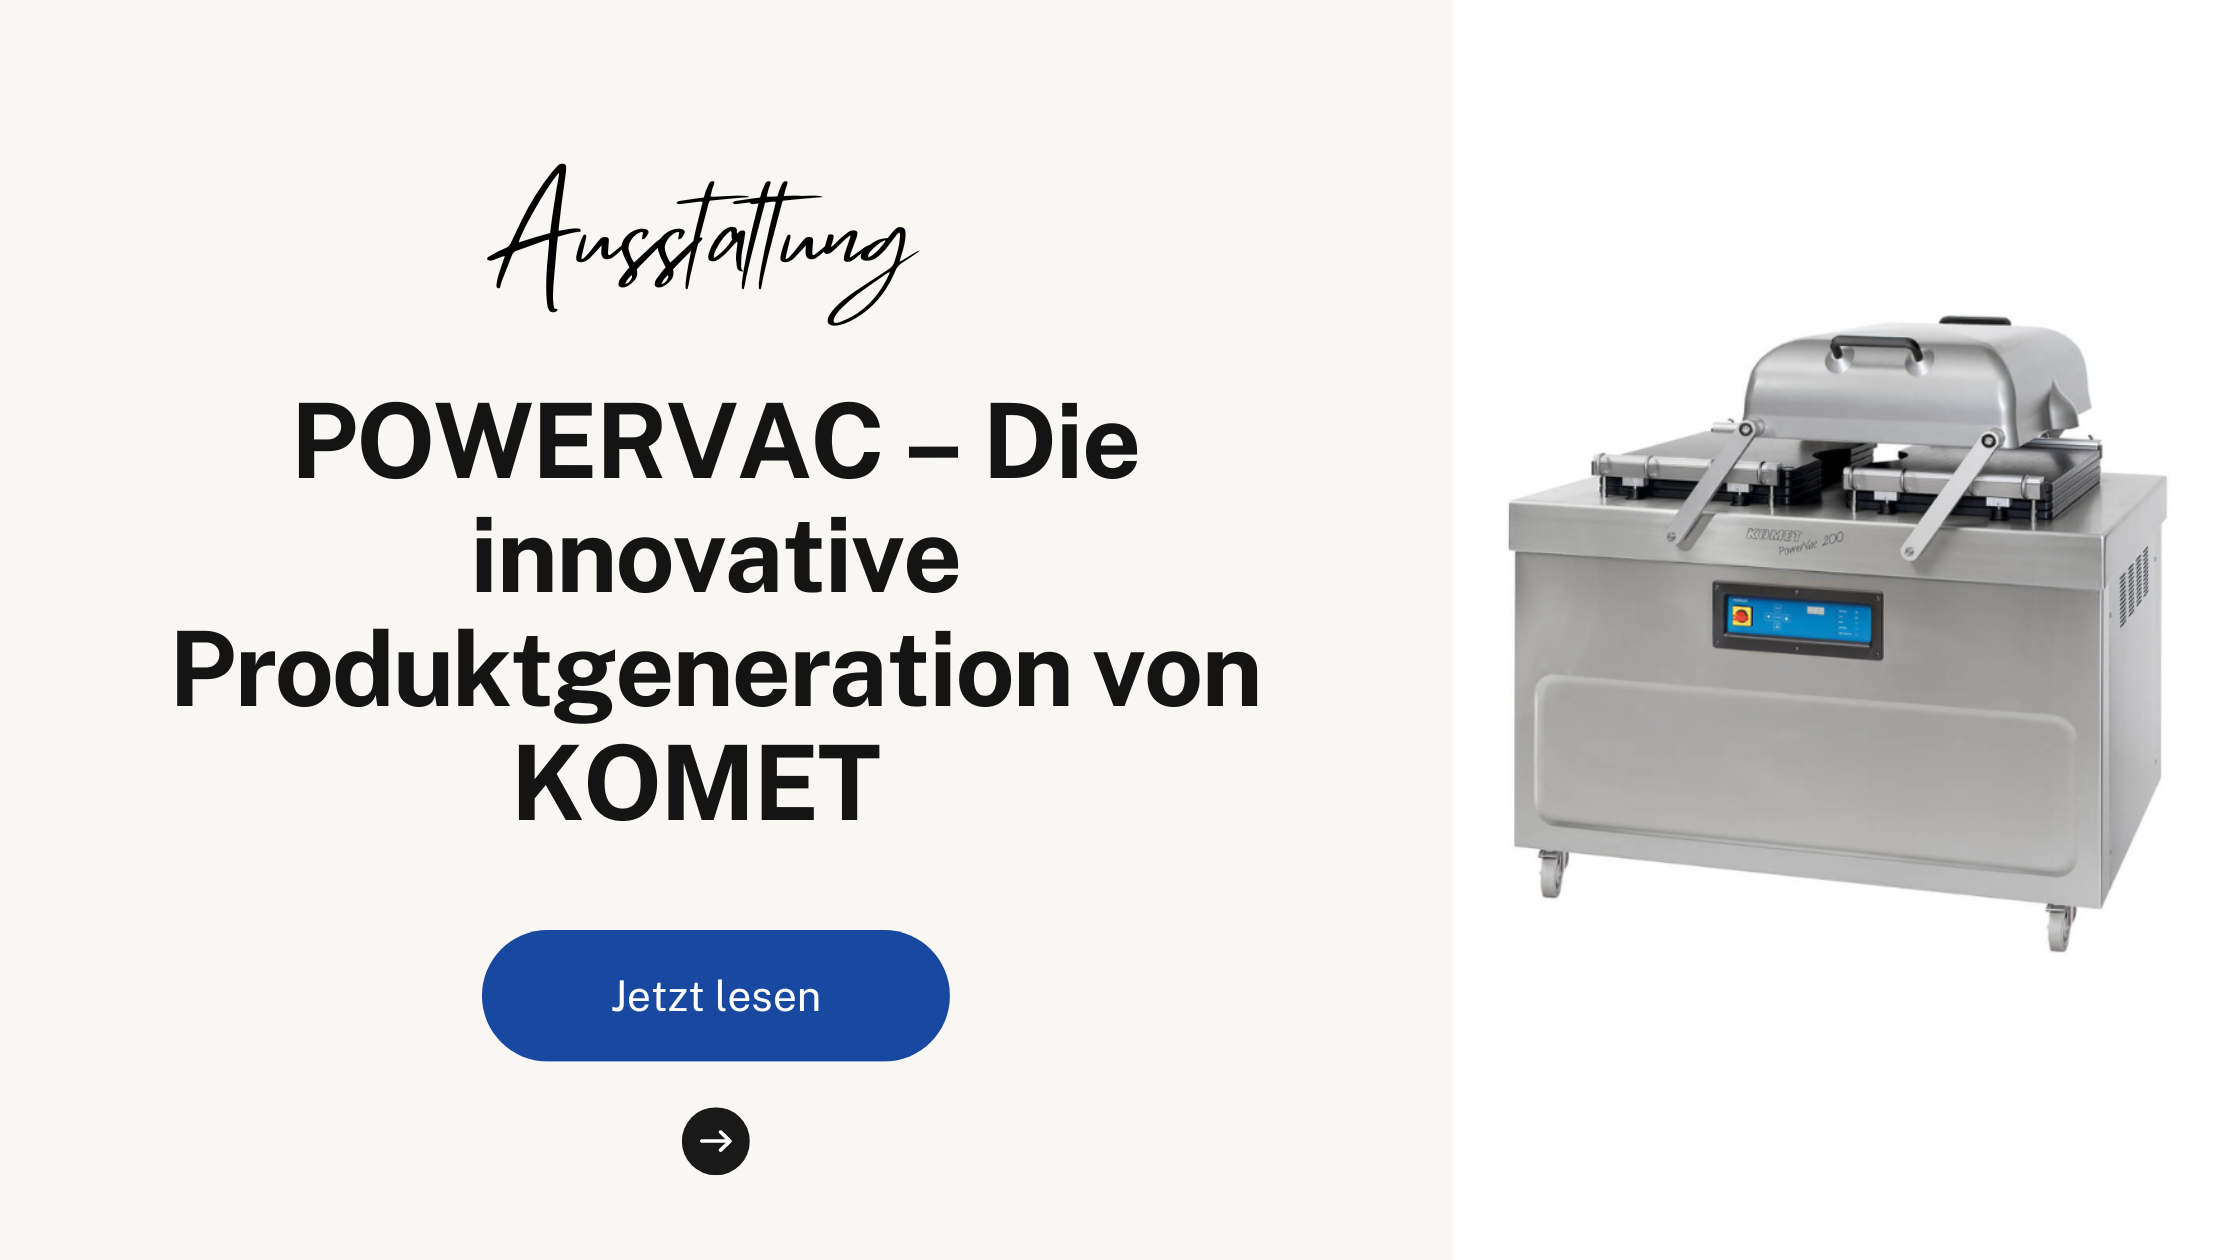 POWERVAC – Die innovative Produktgeneration von KOMET